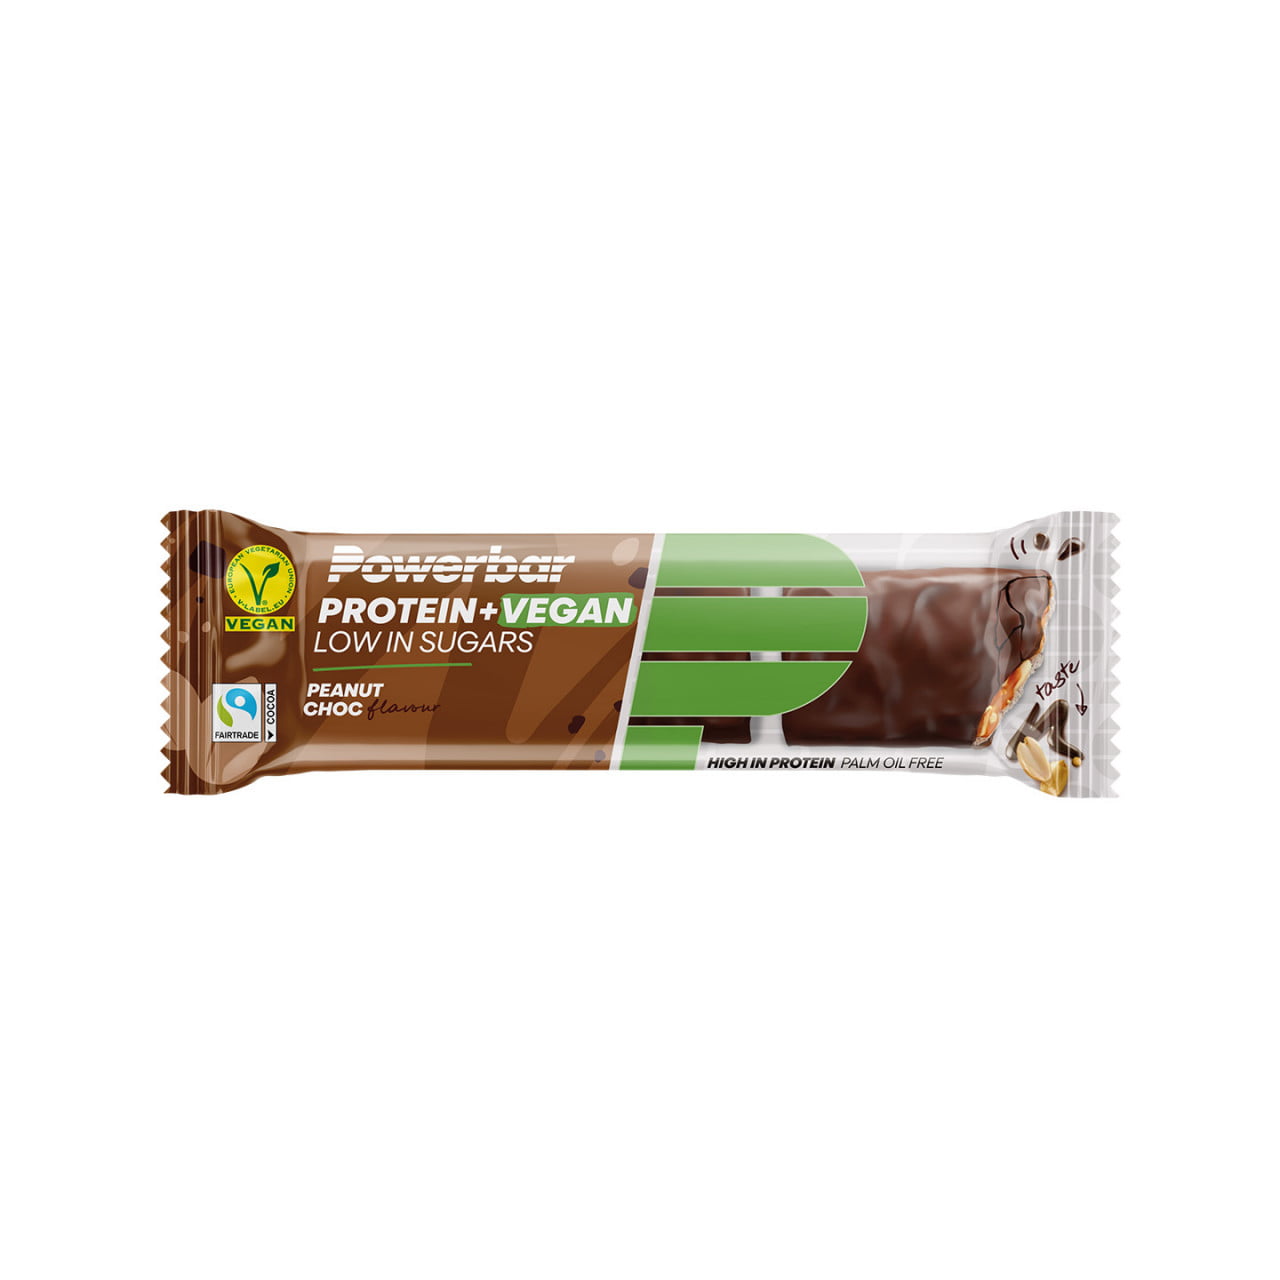 Proteine+ vegane a basso contenuto di zuccheri Peanut Chocolate 12 St.